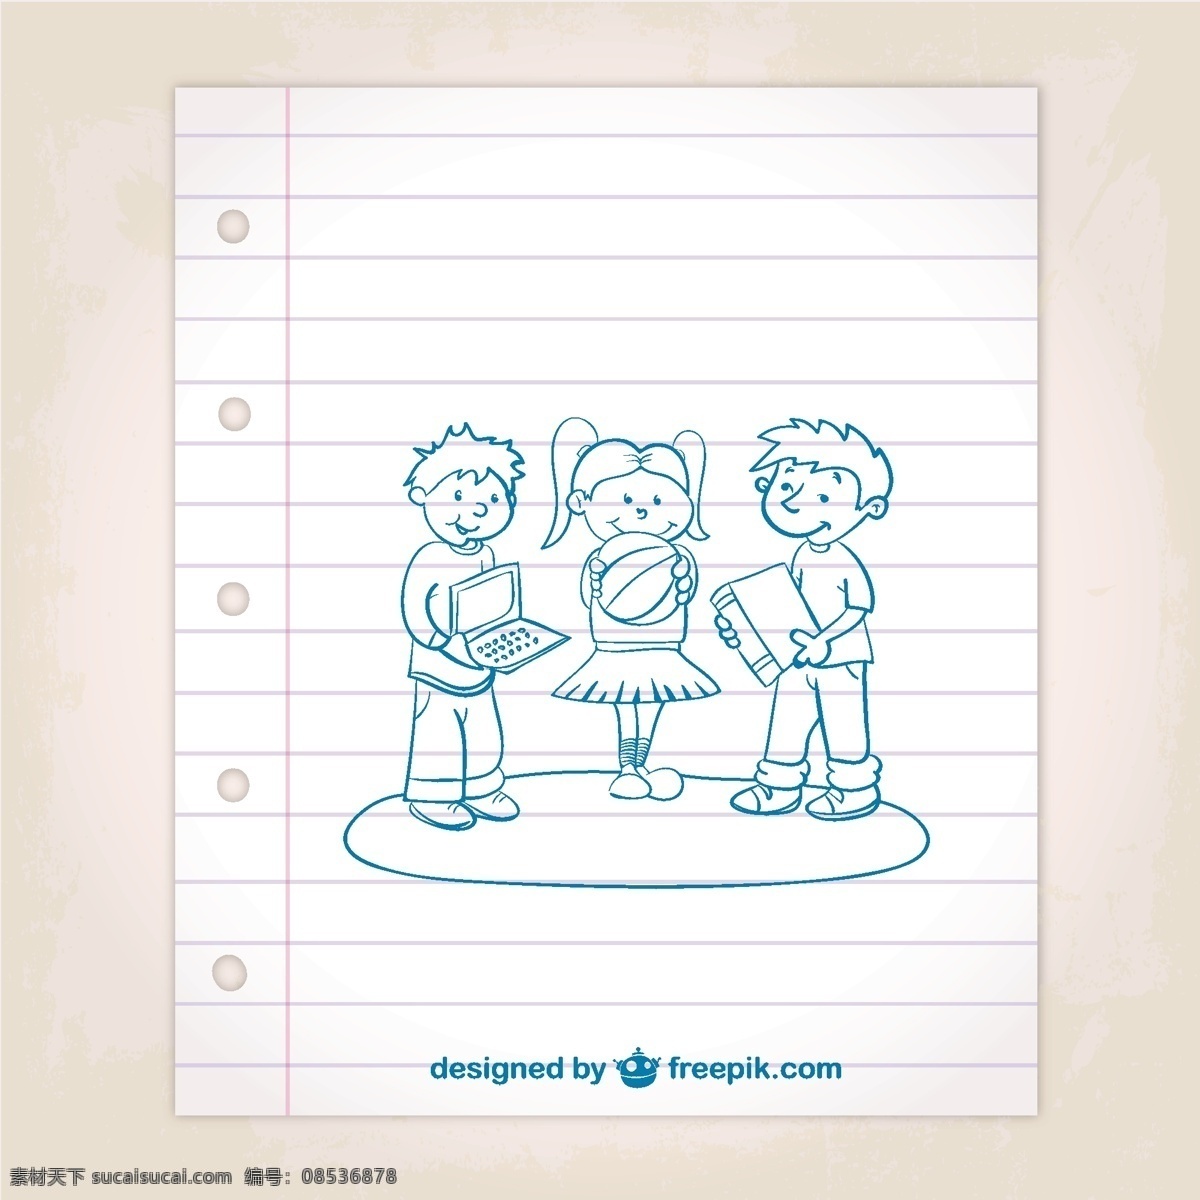 学校 孩子 笔记本 上 画 张 纸 论文 线 蓝色 艺术 图形 涂鸦 男孩 平面设计 素描 绘画 水墨 玩元素 插图 设计元素 白色